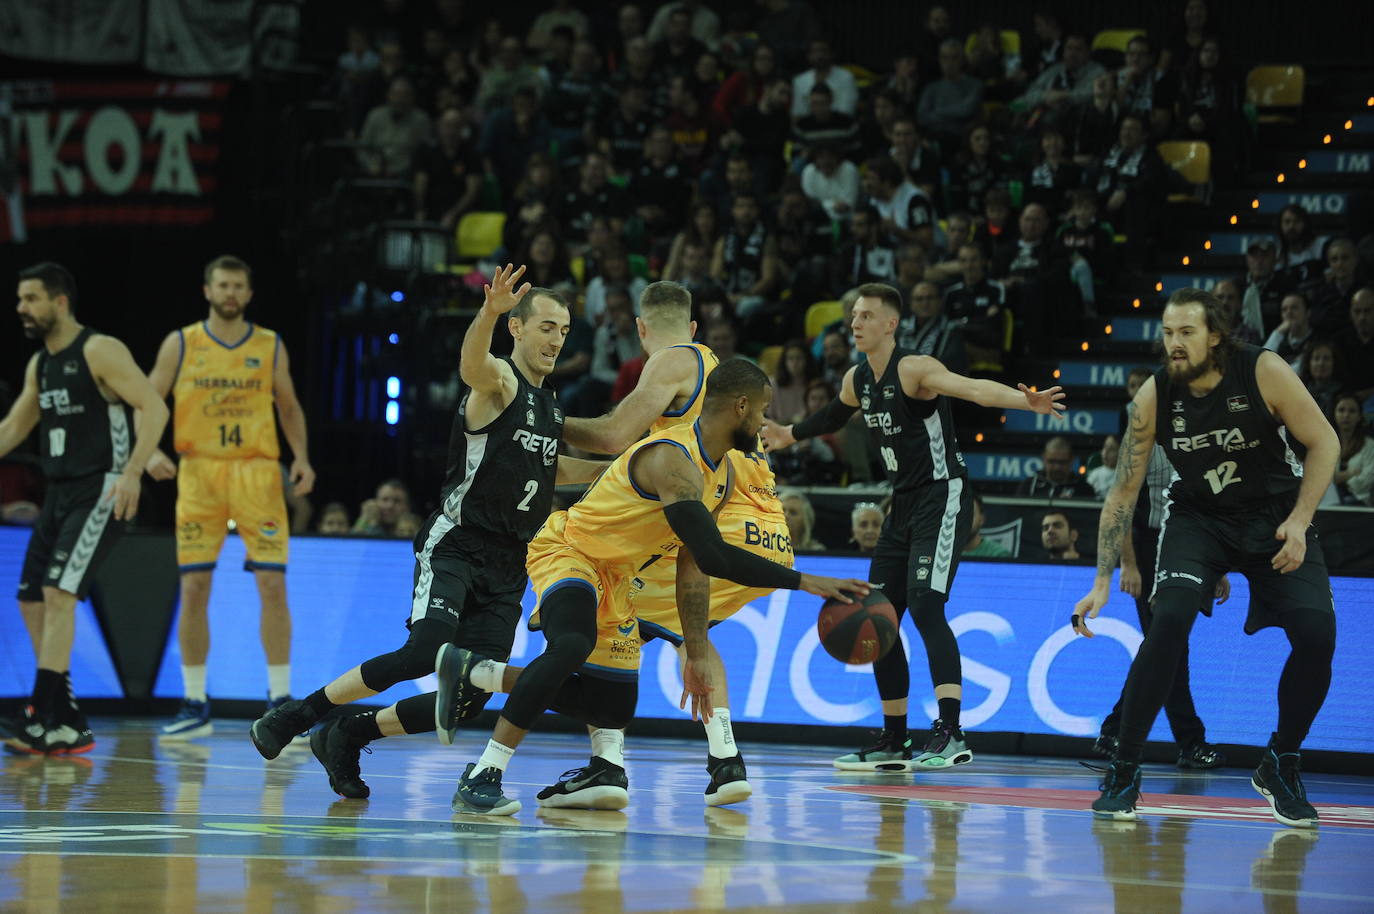 Fotos: El Bilbao Basket - Herbalife, en imágenes